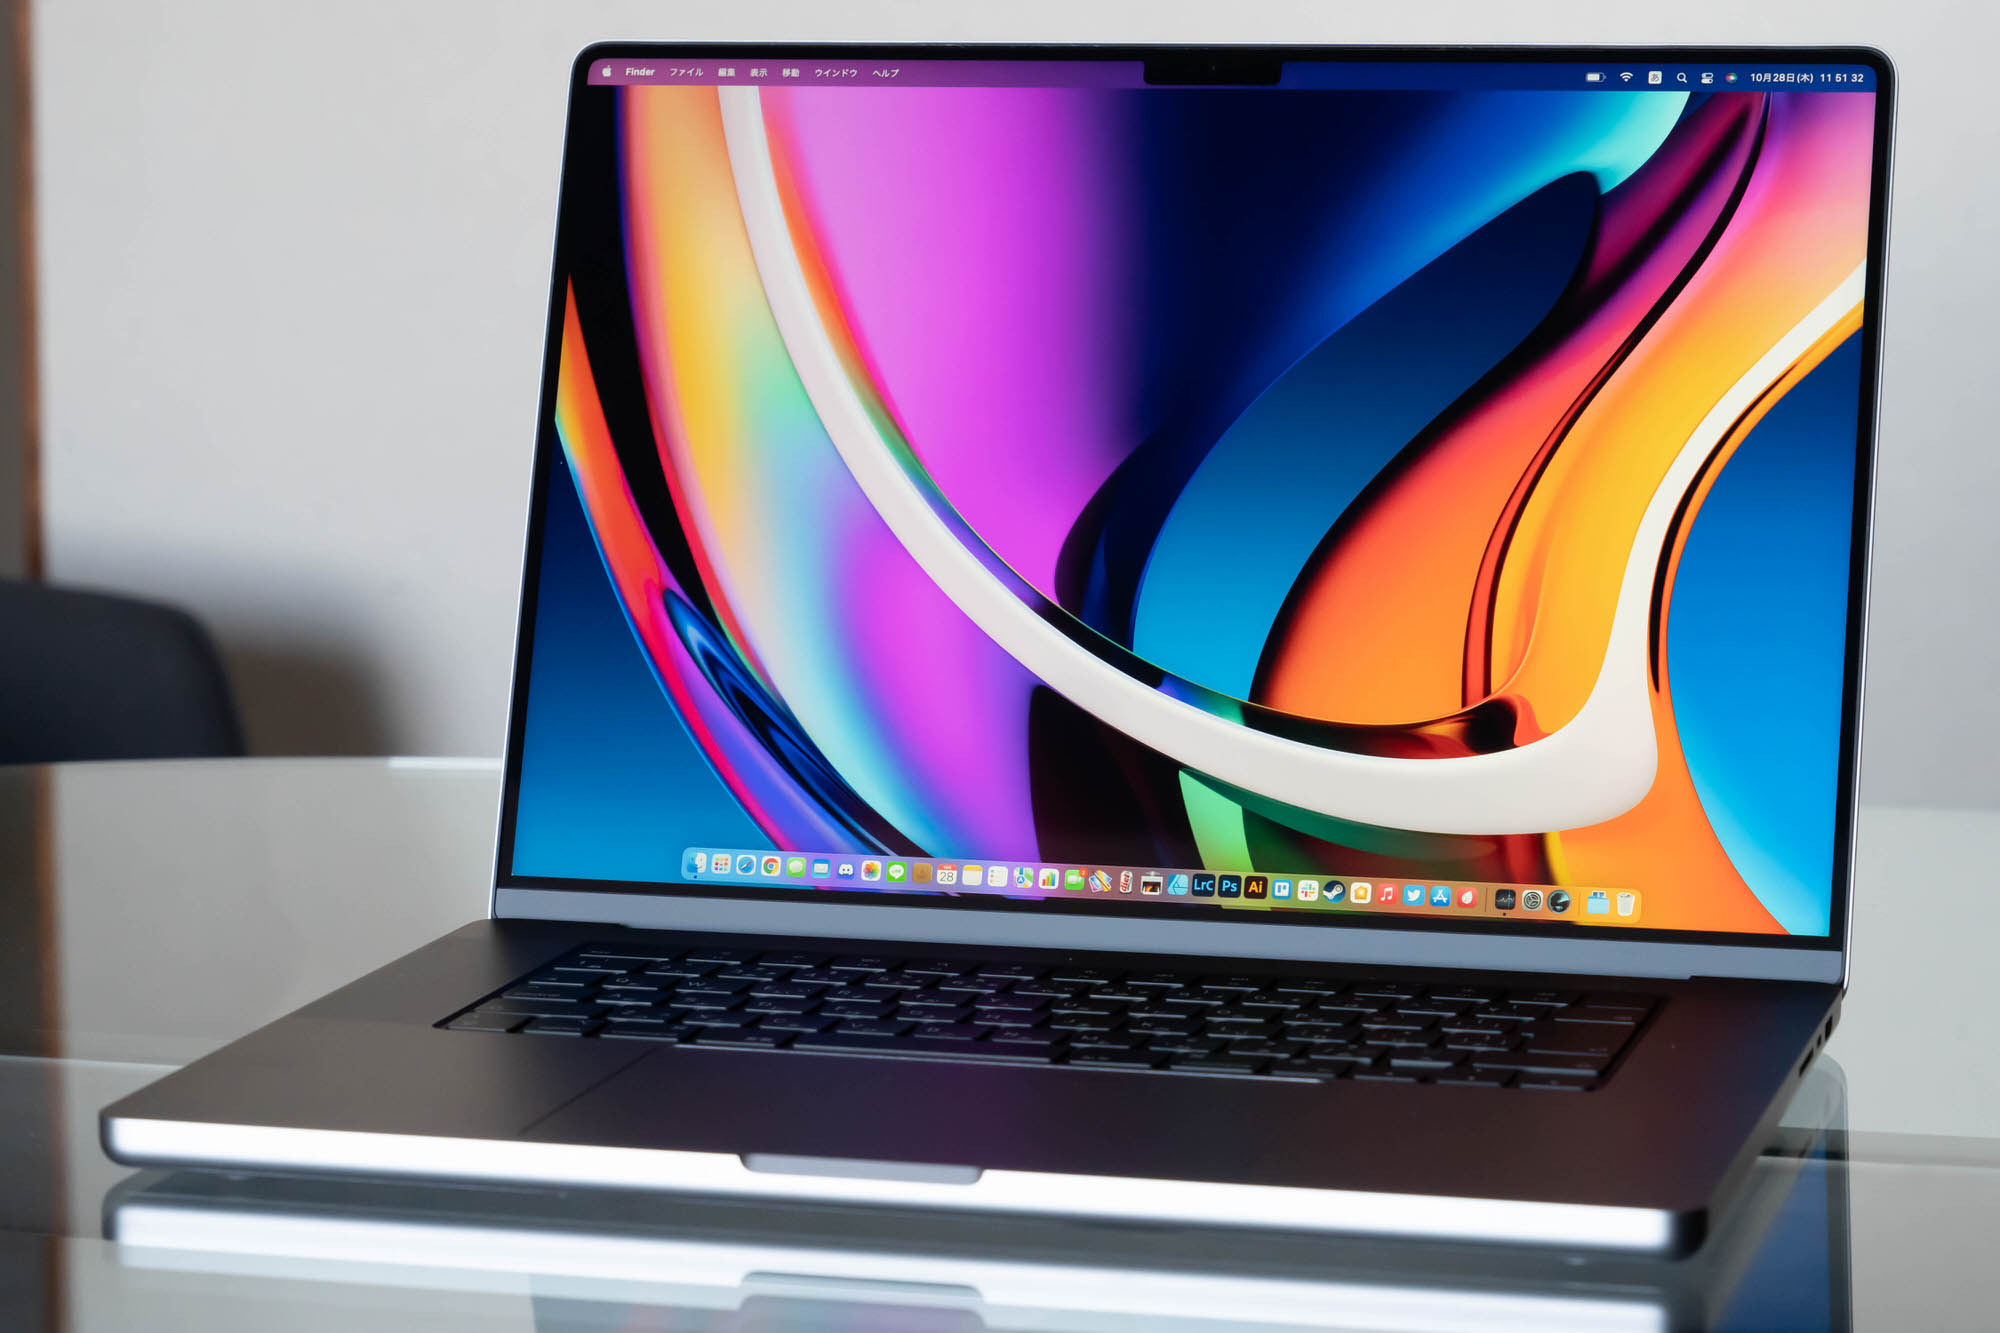 絶賛商品 『美品』MacBook M1pro 16インチ pro ノートPC